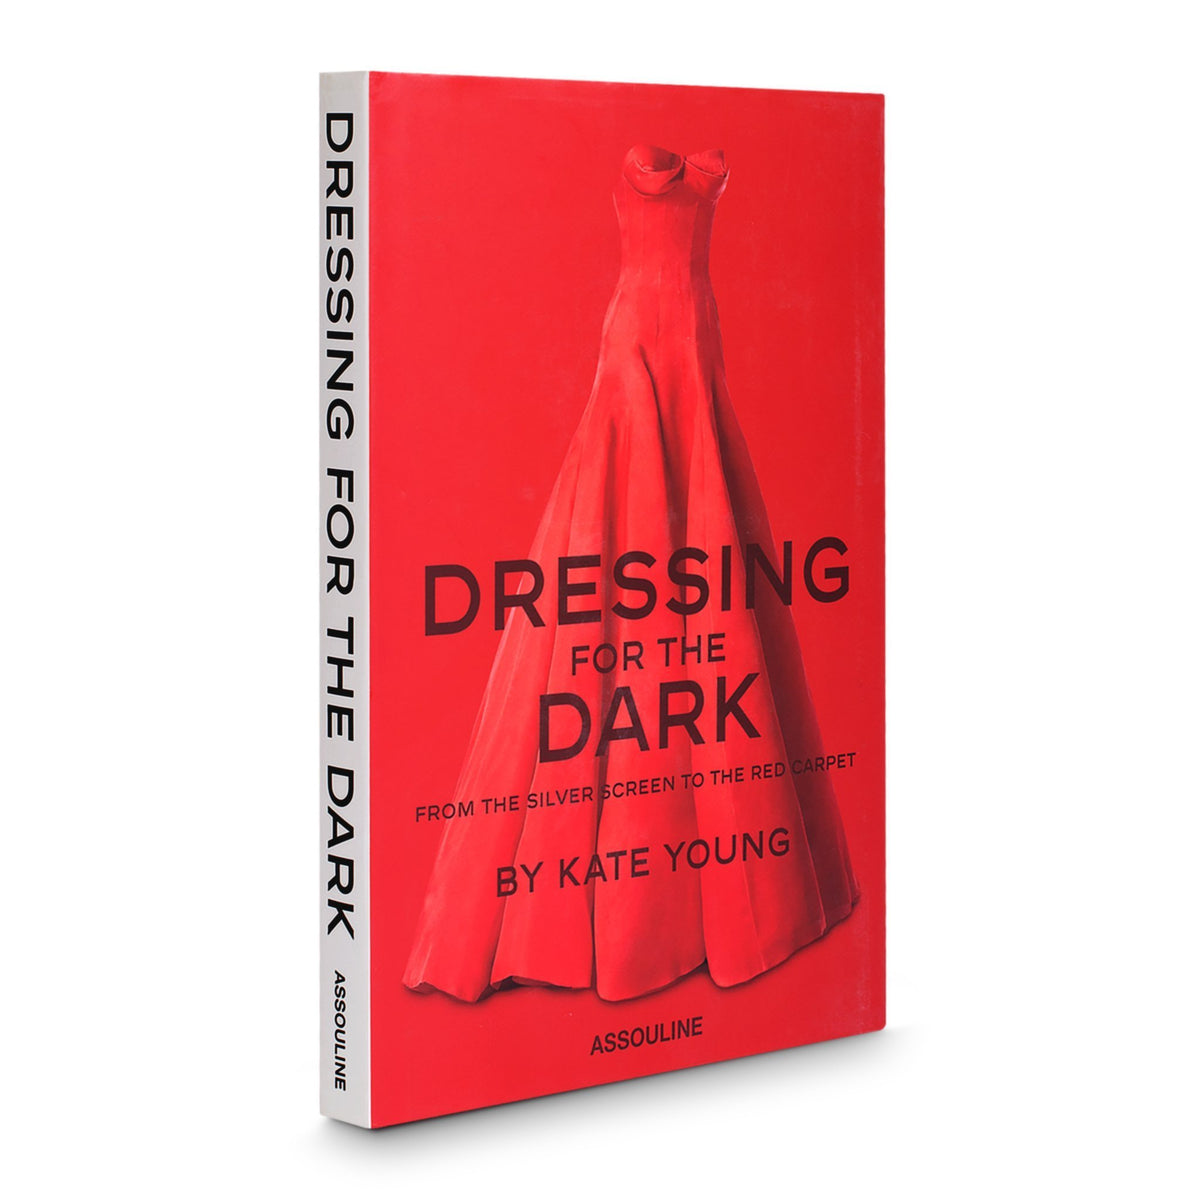 Dressing for the Dark